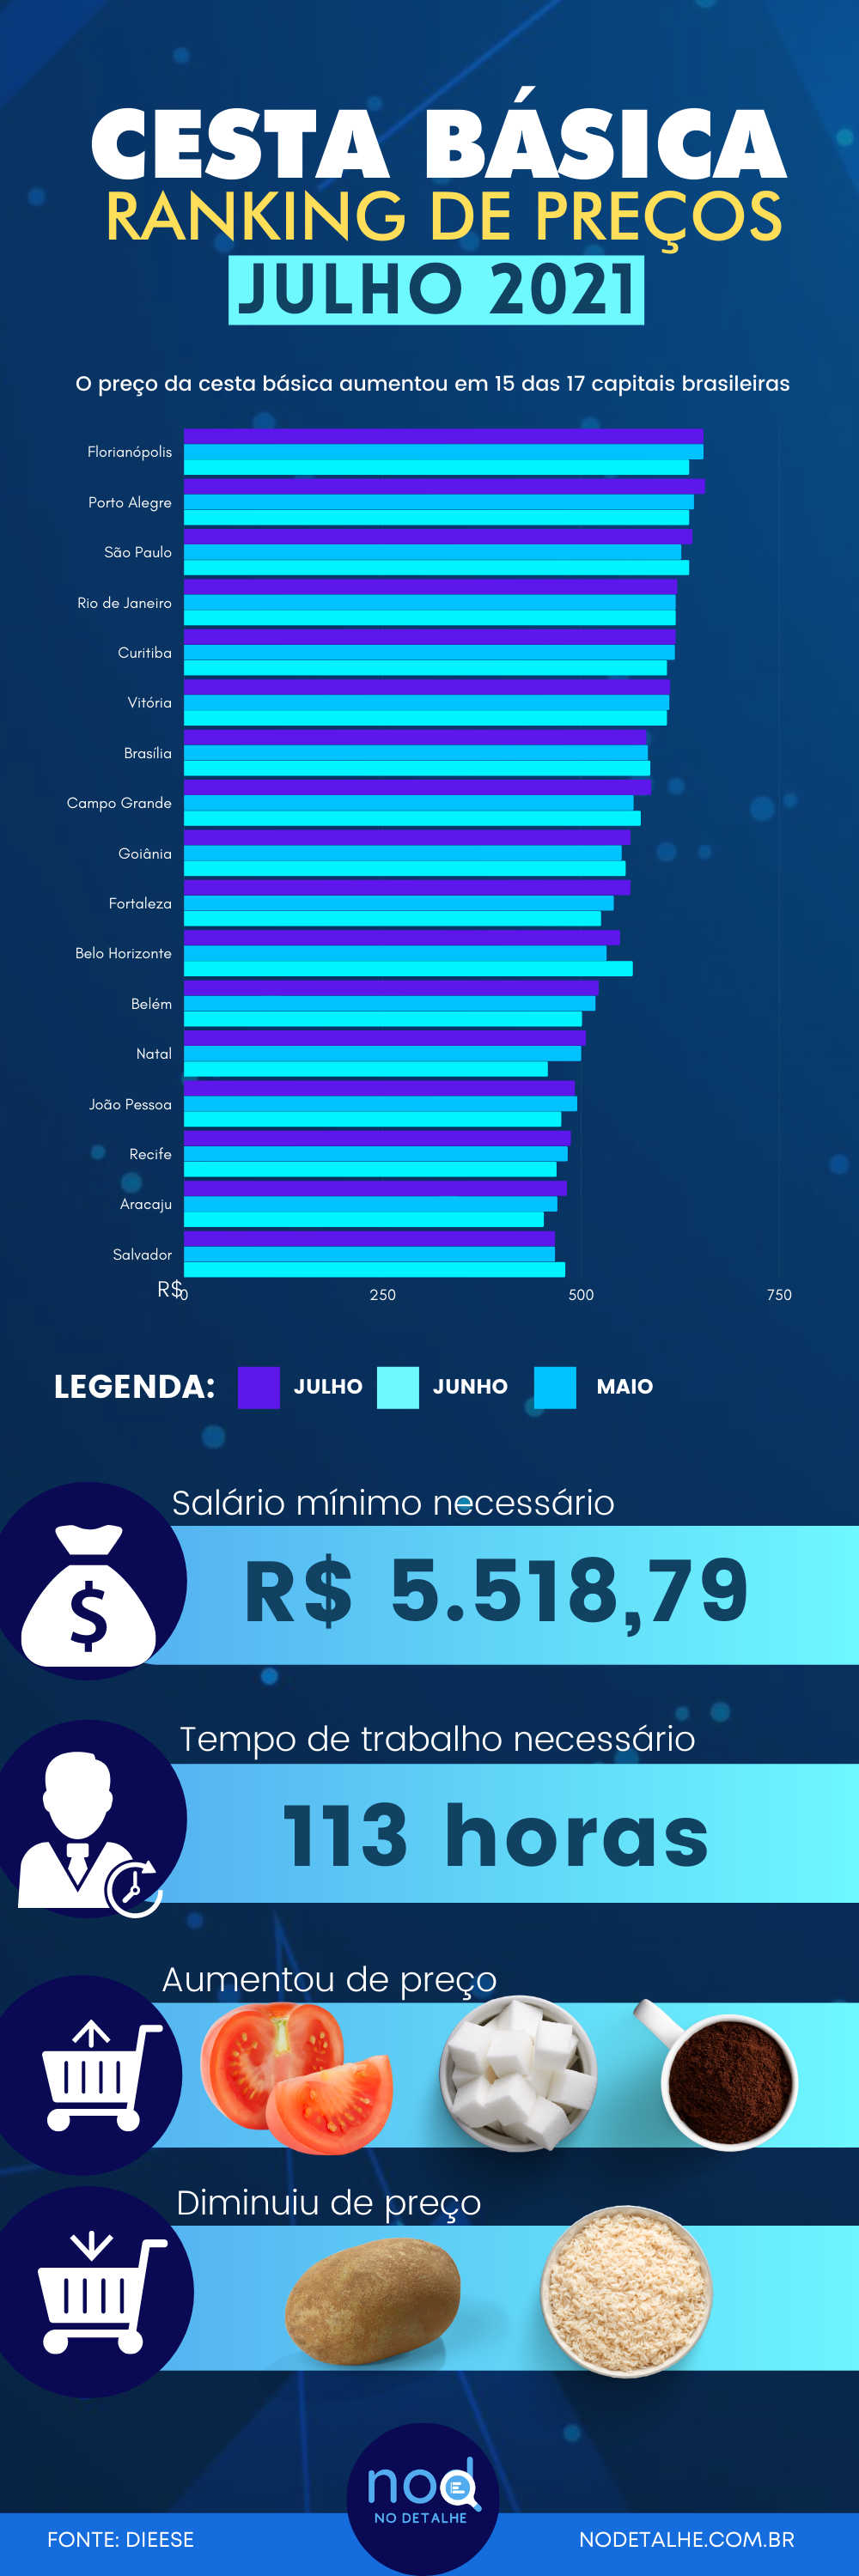 Ranking de preços da cesta básica nas capitais do Brasil Julho-Agosto 2021